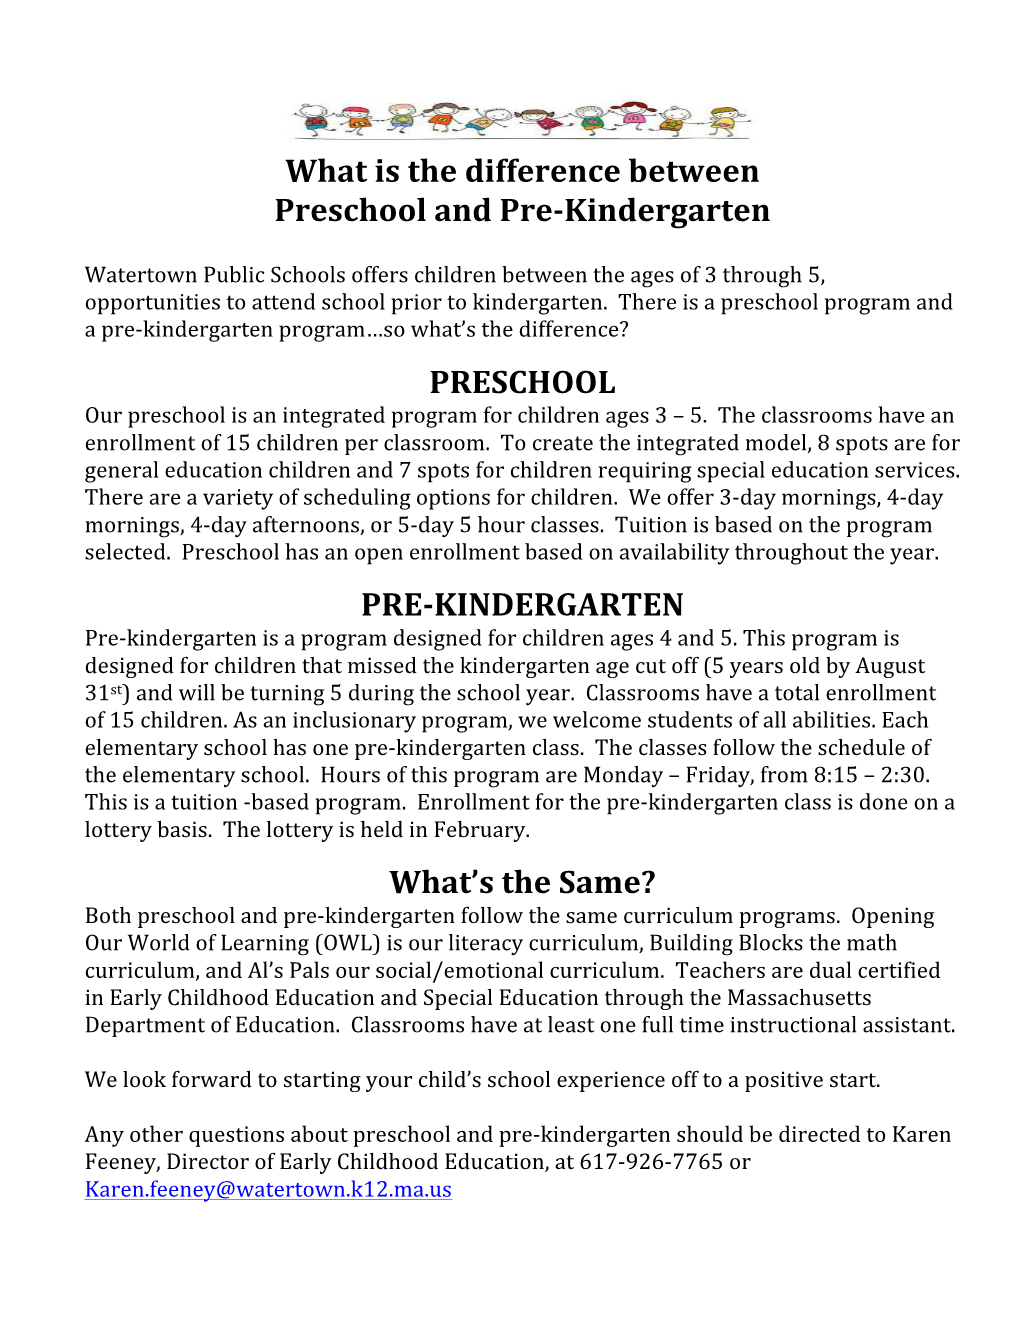 What Is the Difference Between Preschool and Pre-Kindergarten - DocsLib